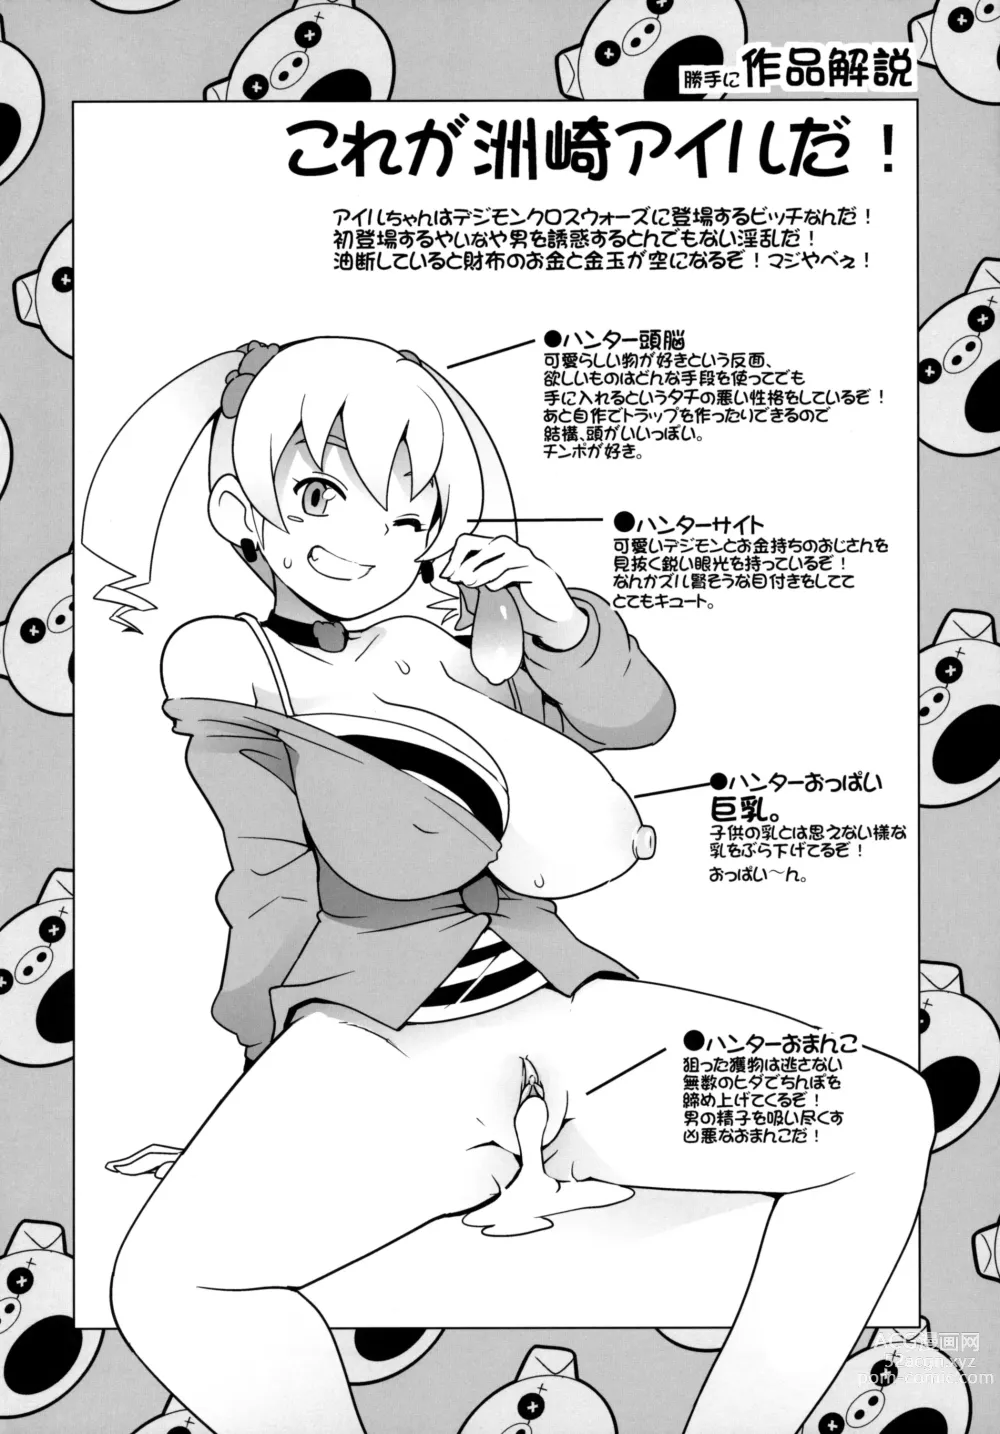 Page 21 of doujinshi Chibikko Bitch Hunters (decensored)